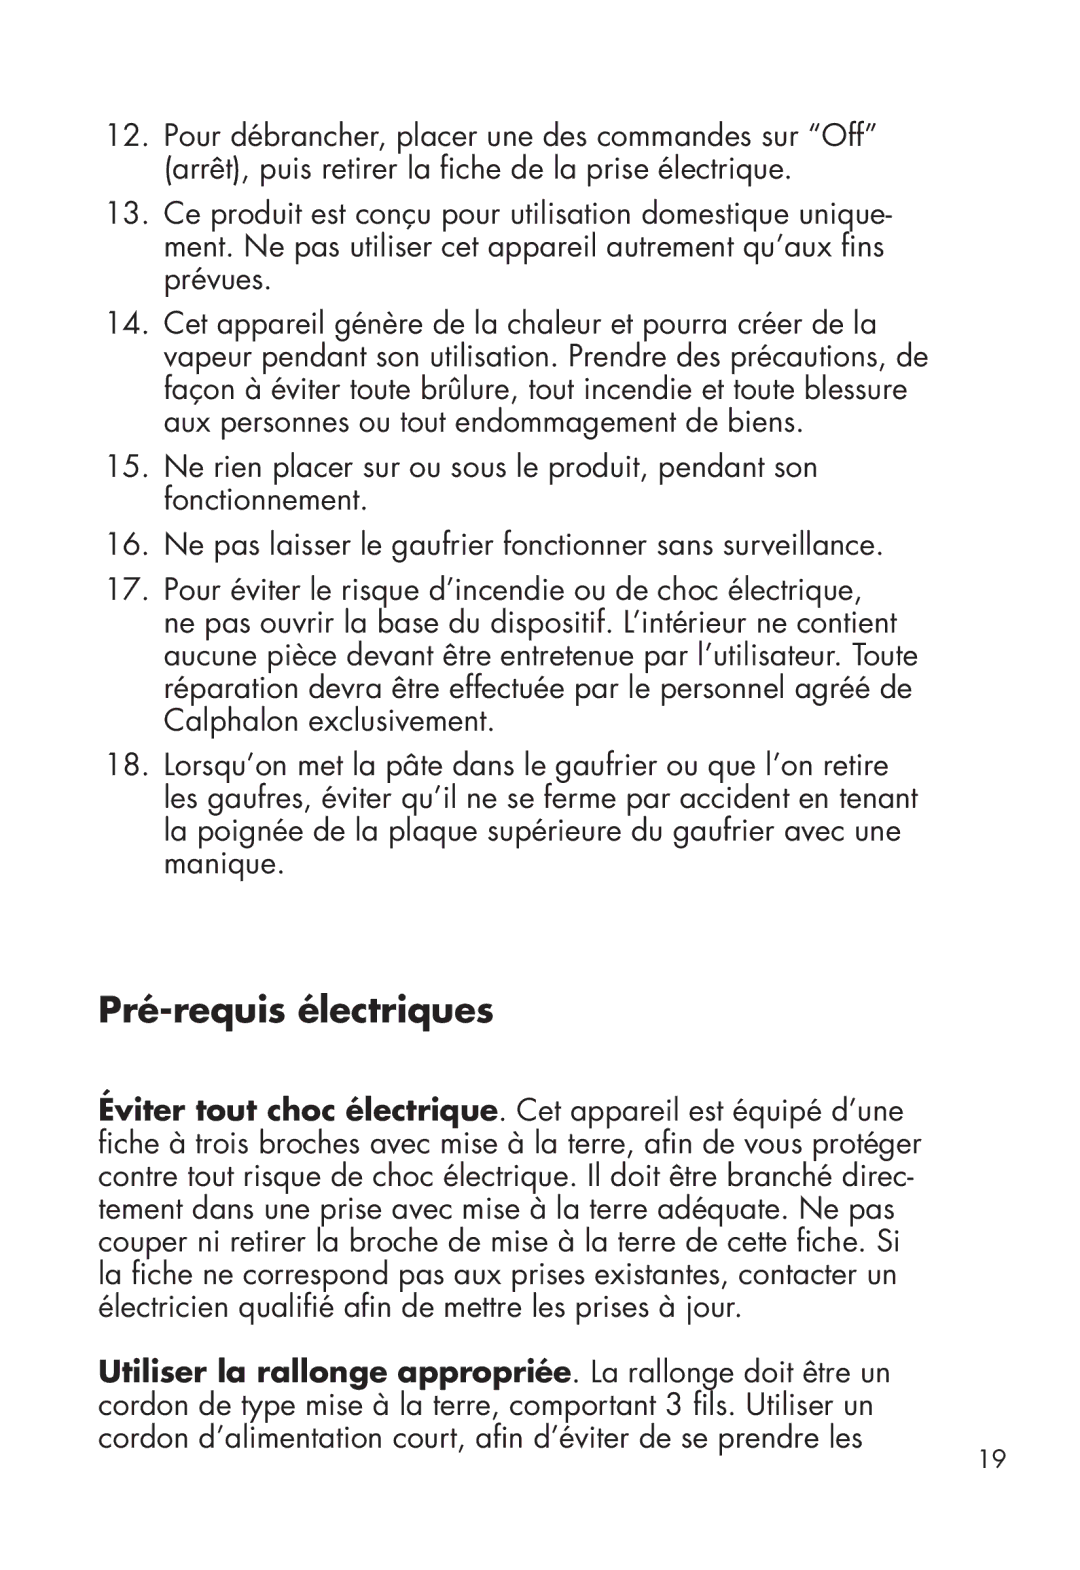 Calphalon HE400WM manual Pré-requis électriques 